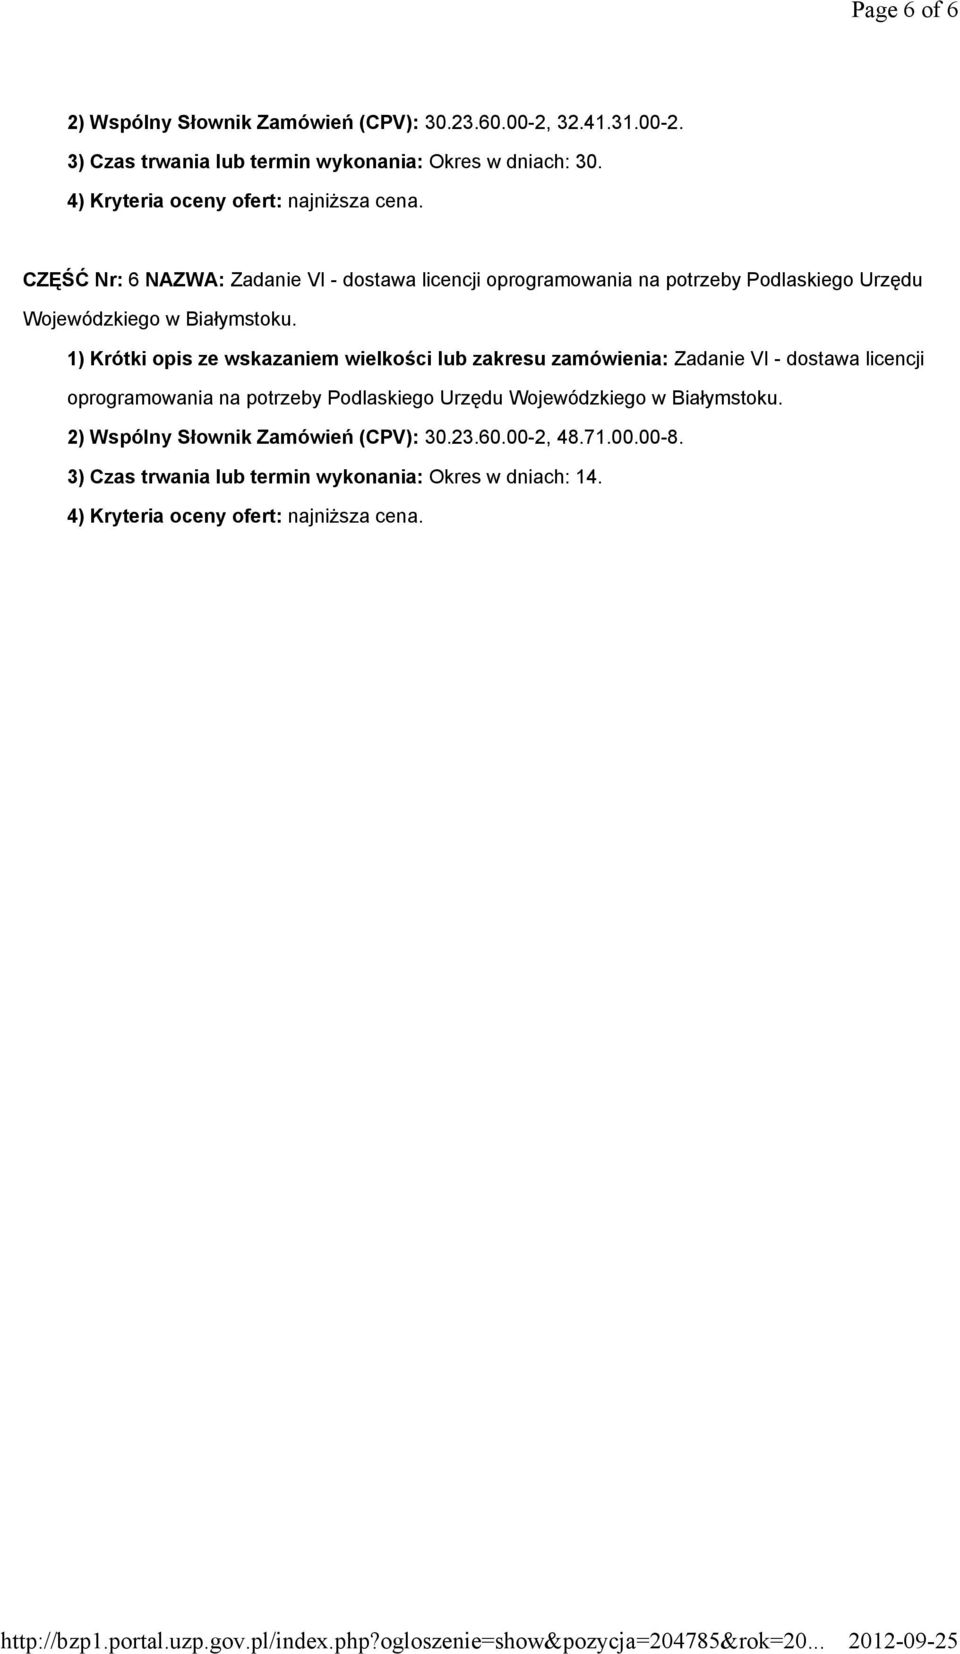 CZĘŚĆ Nr: 6 NAZWA: Zadanie VI - dostawa licencji oprogramowania na potrzeby Podlaskiego Urzędu Wojewódzkiego w Białymstoku.